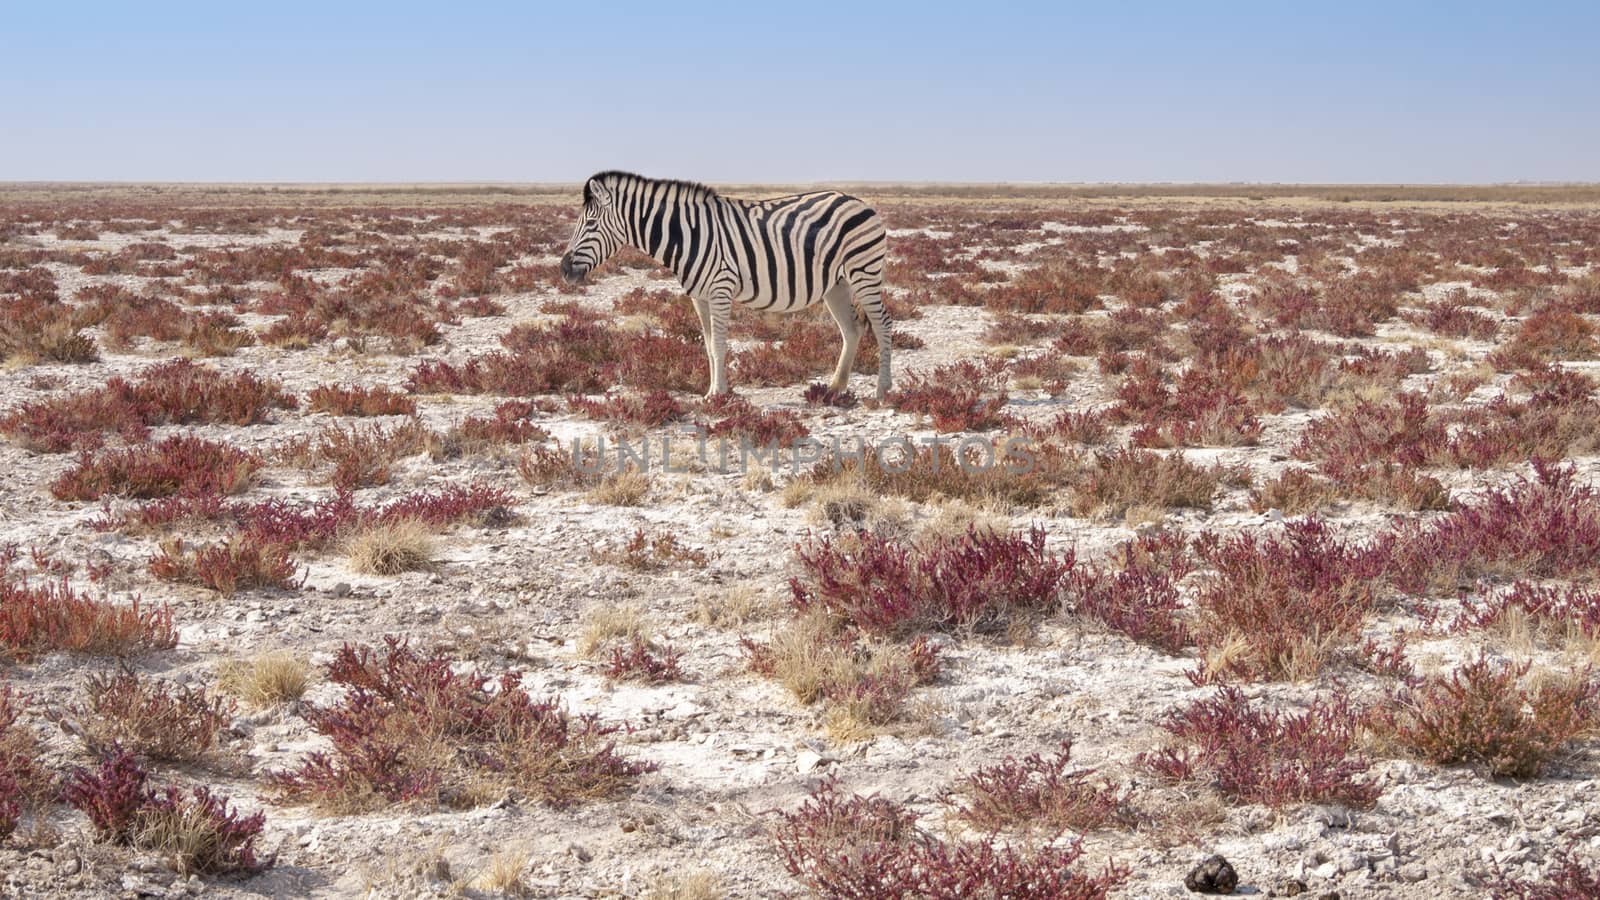 Zebra in the Etosha National Park in Namibia in Africa.